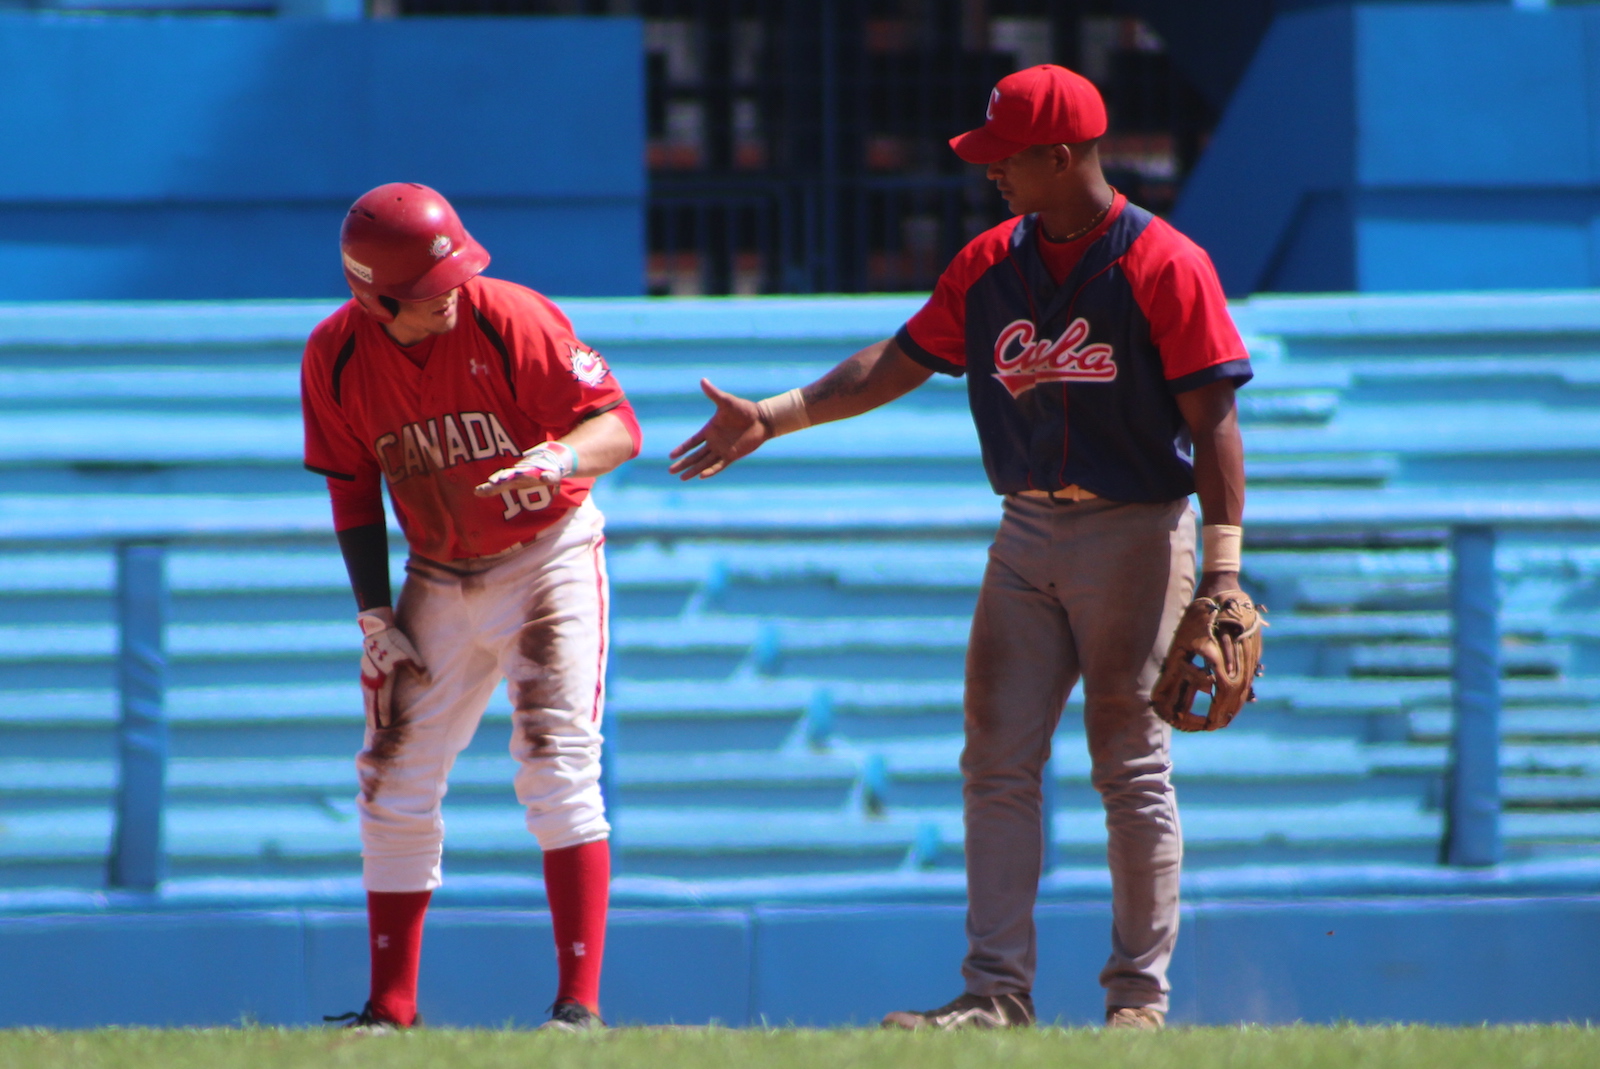 L'équipe nationale junior à Cuba : une grosse manche mène Cuba à la victoire